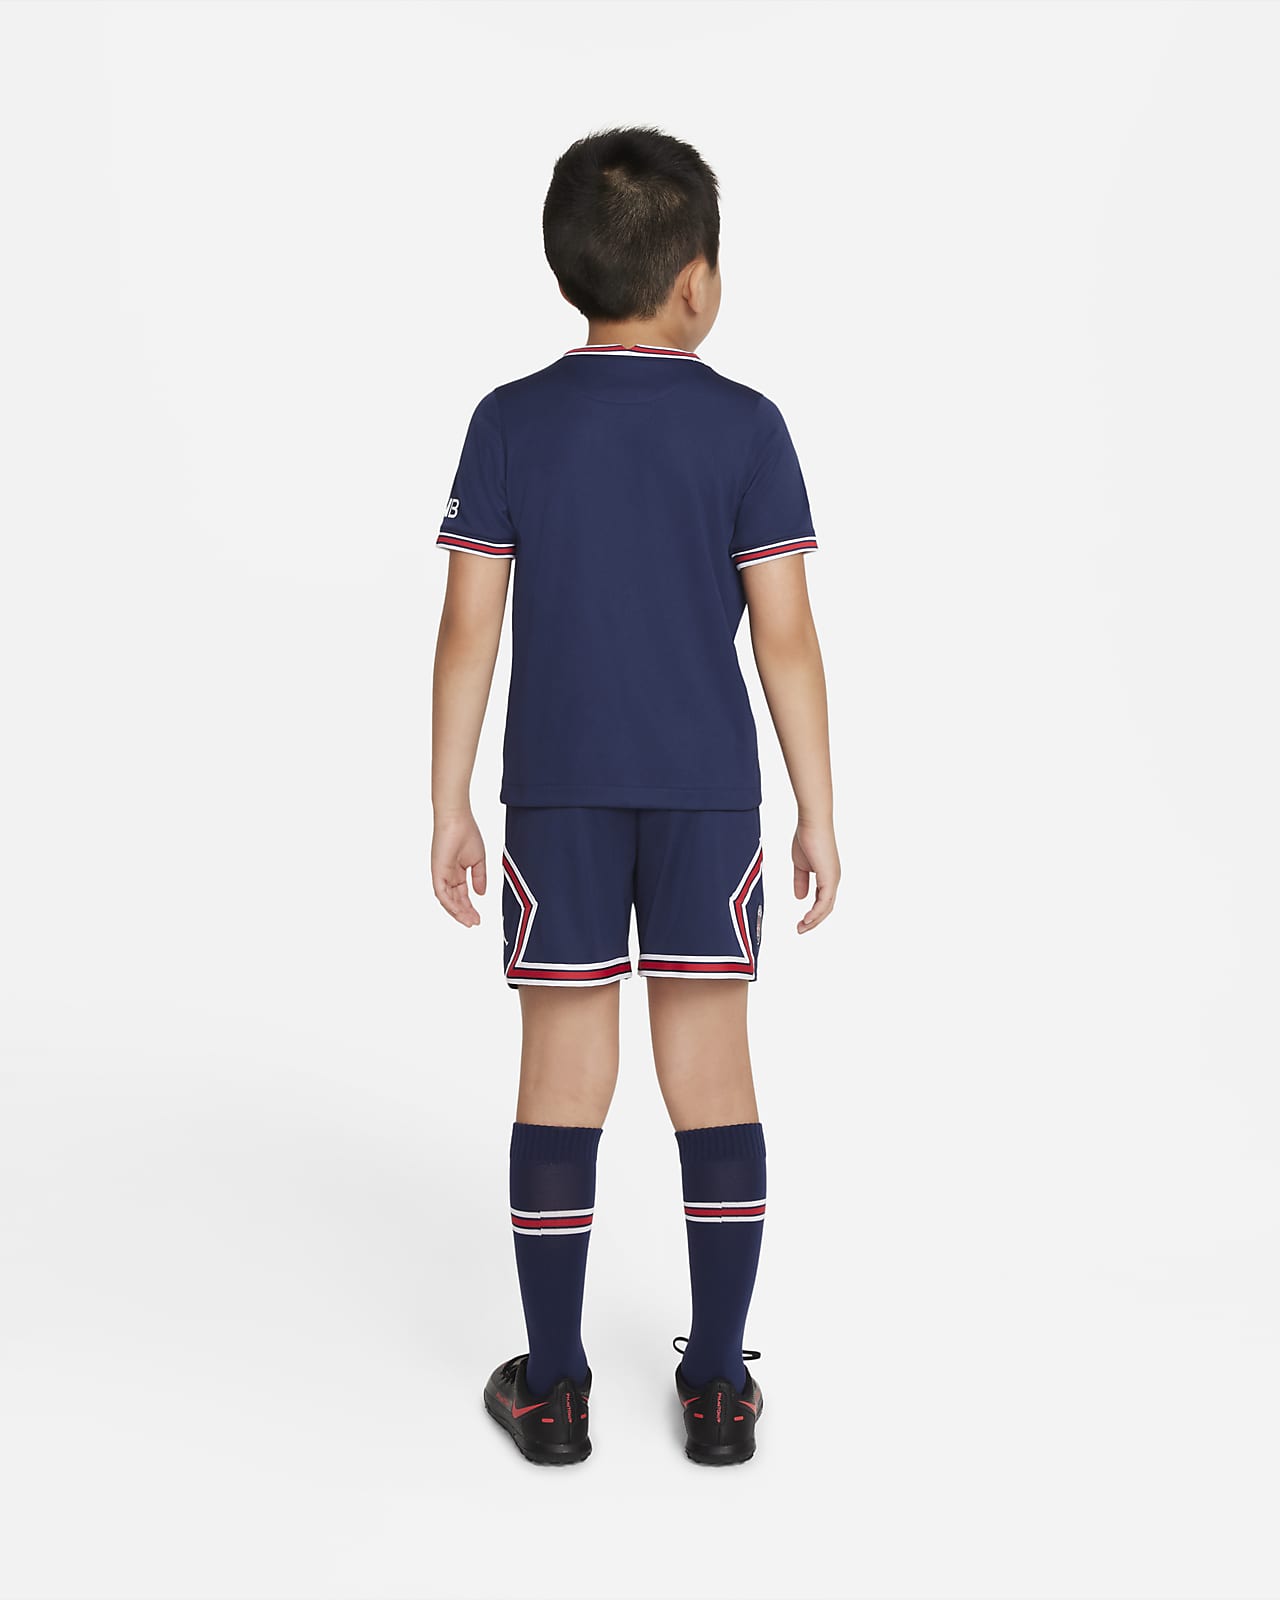 child size football jersey